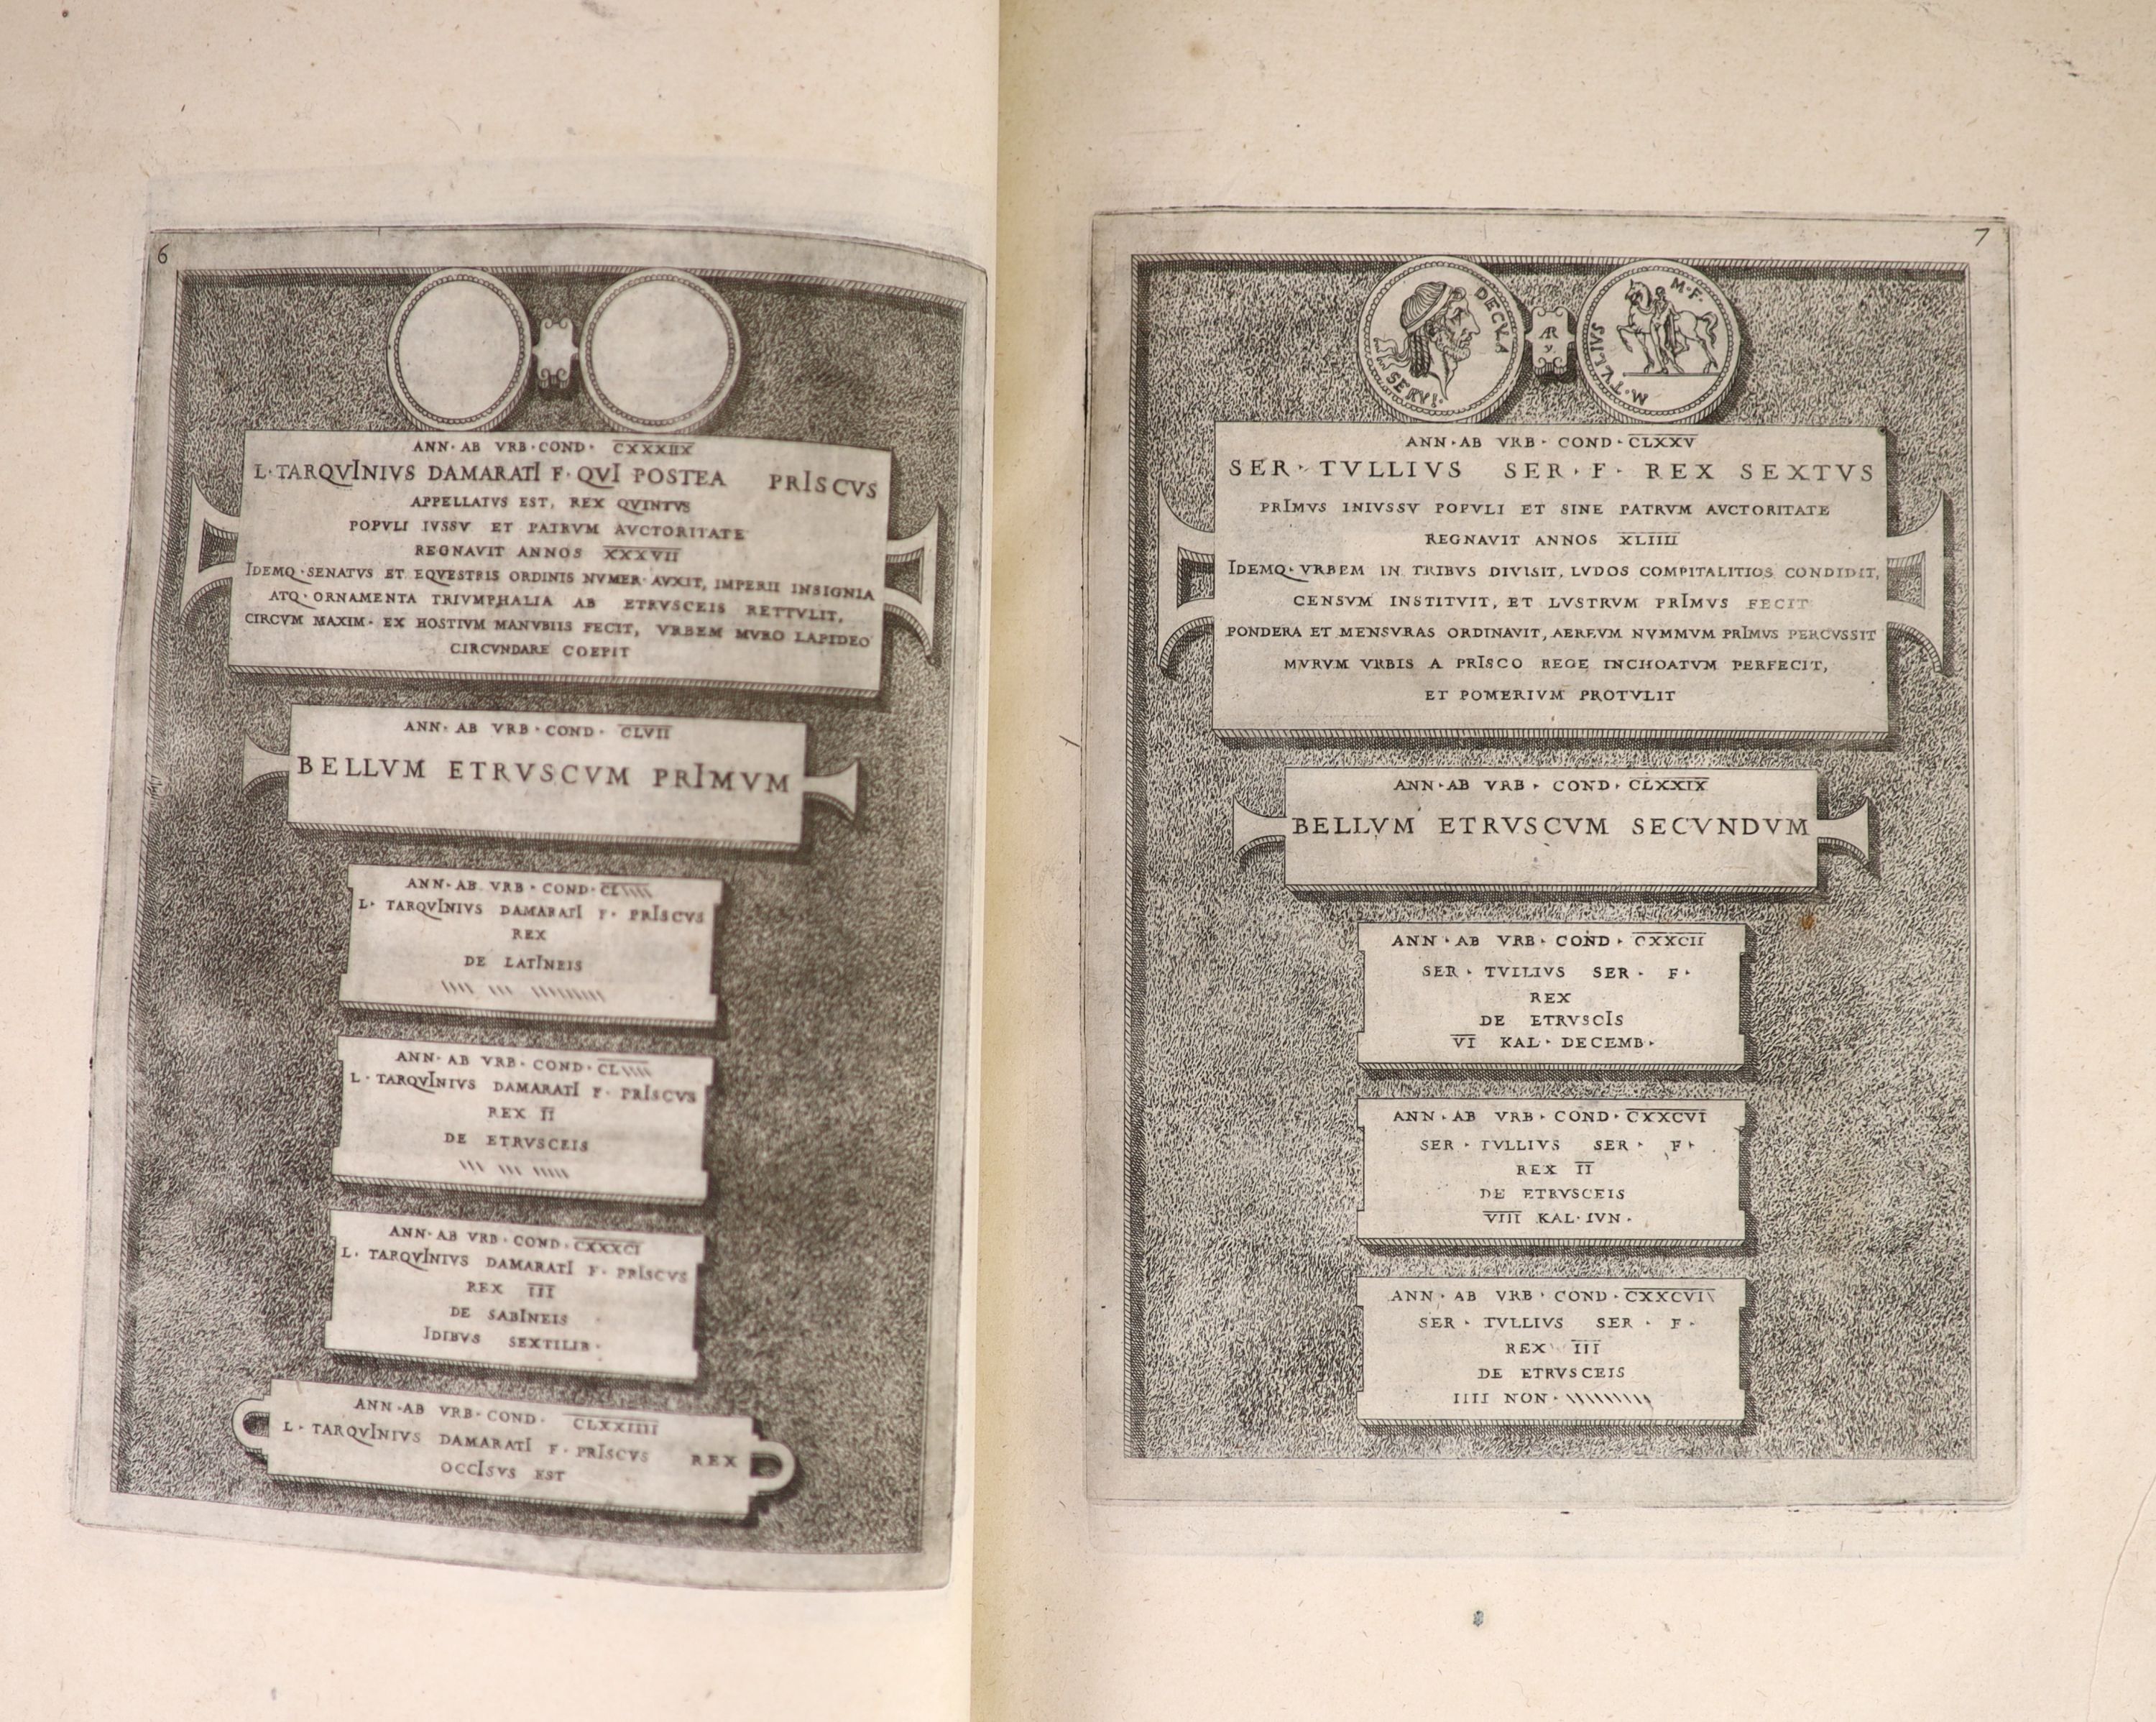 Goltzius, Hubert - Romanae et Graecae Antiquitatis Monumenta, e Priscis Numismatibus Eruta ... pictorial engraved title (by Rubens), pictorial engraved supplementary title